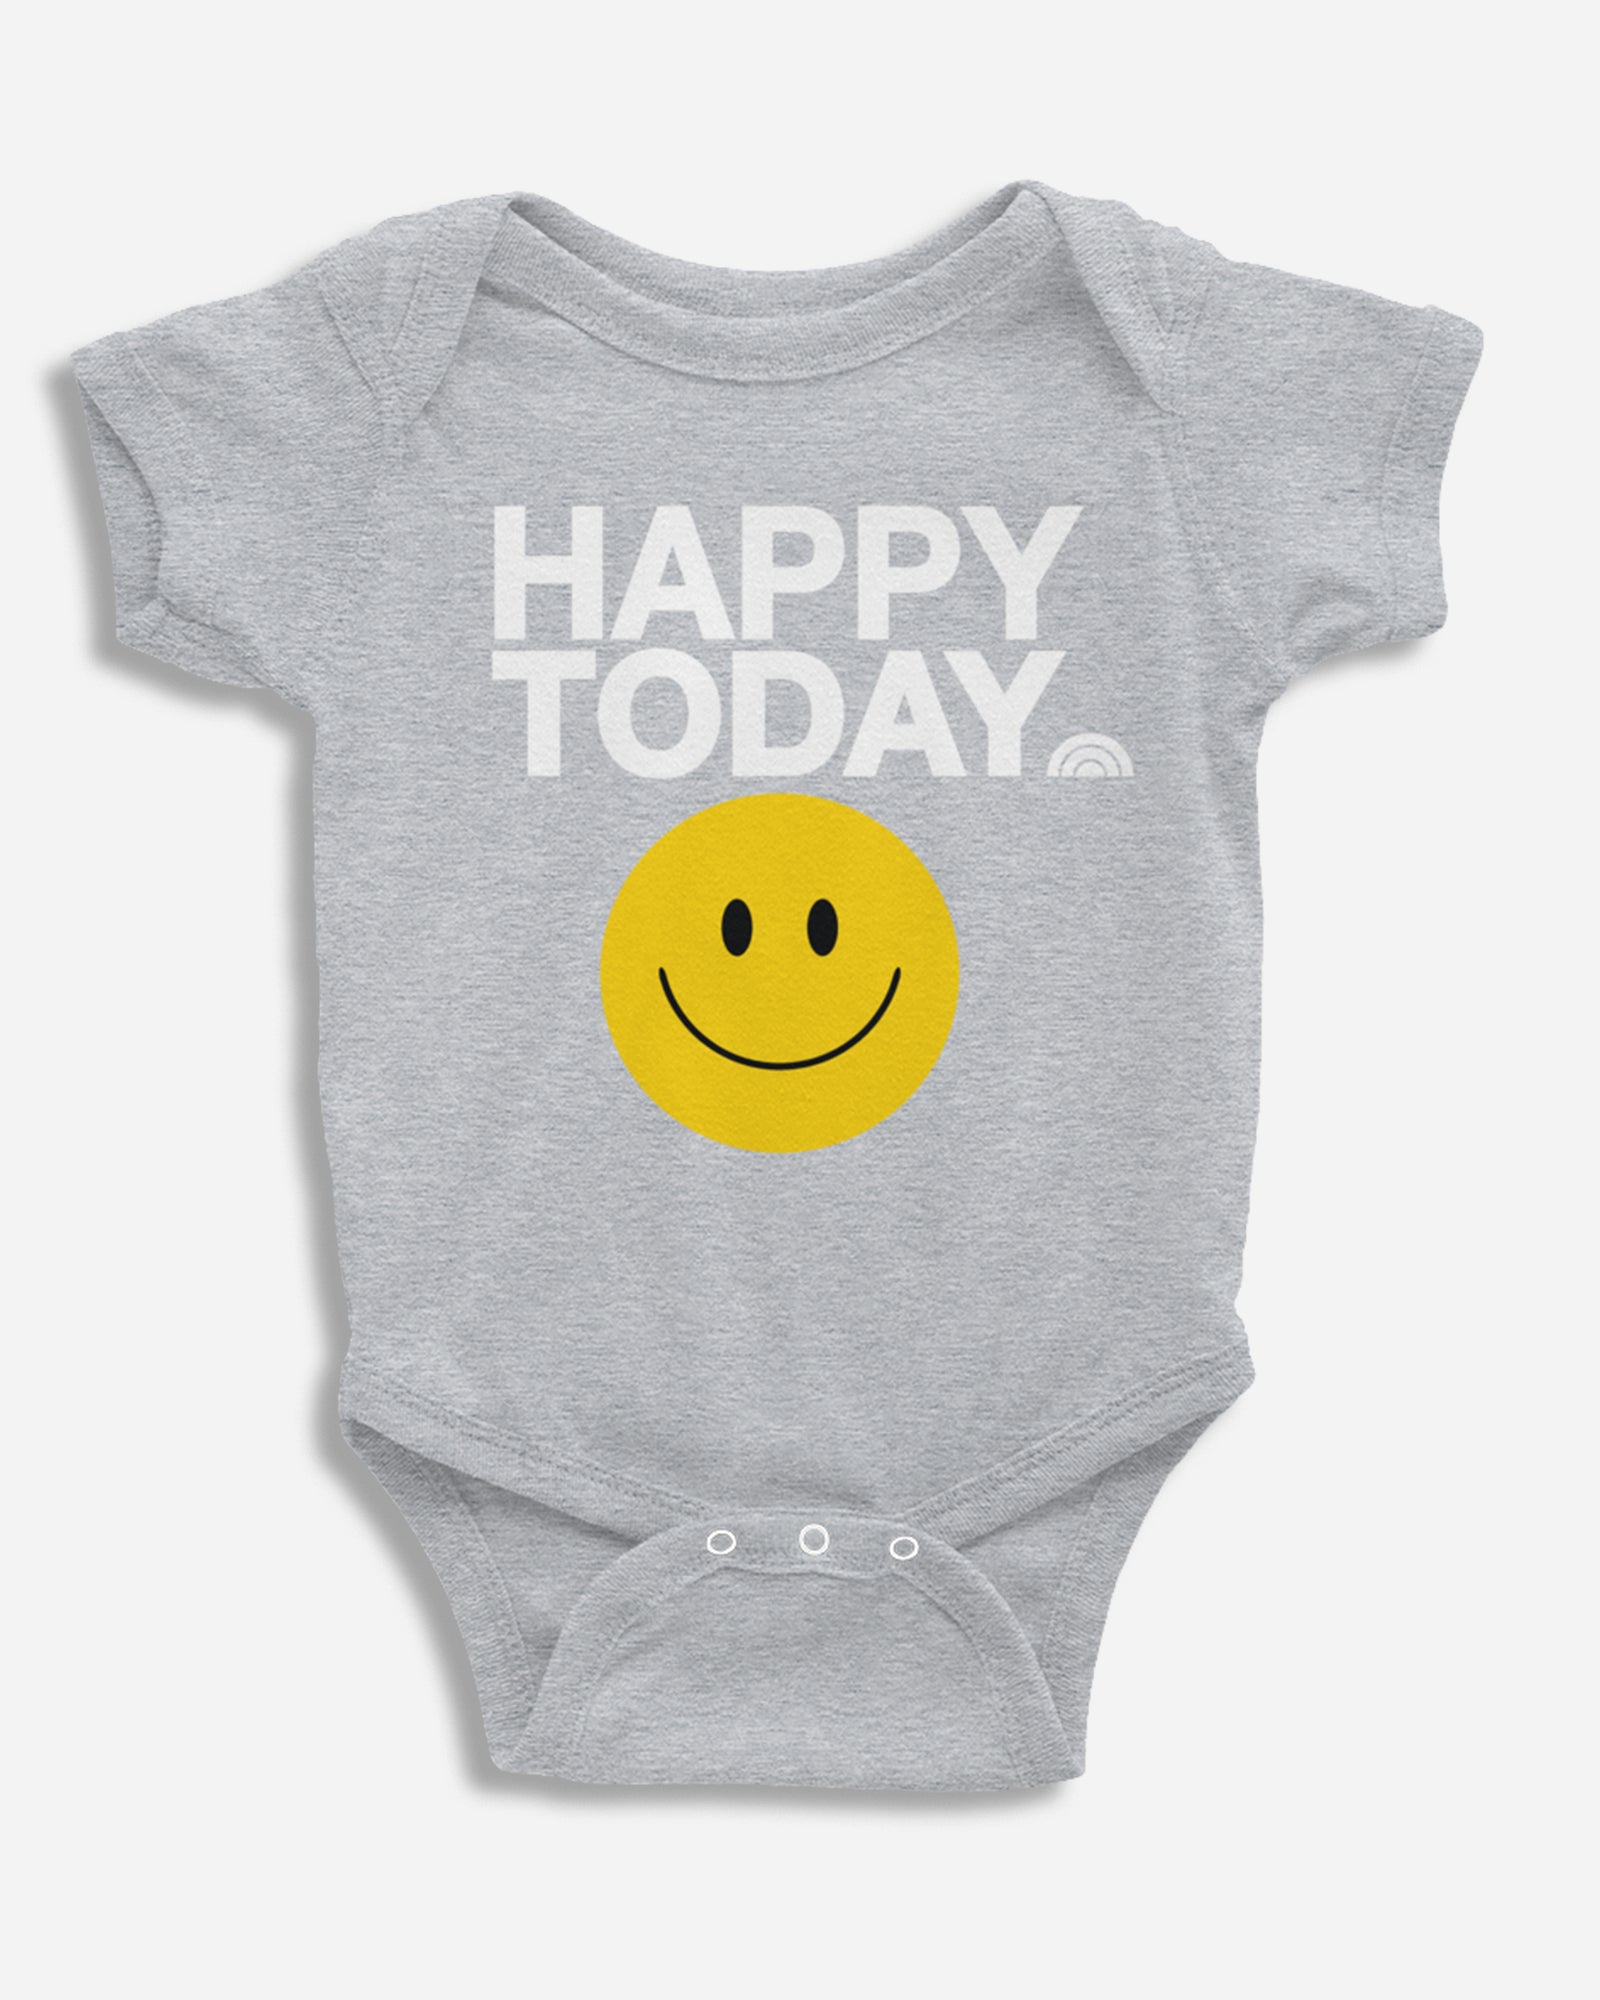 TODAY Happy Today Baby Bodysuit